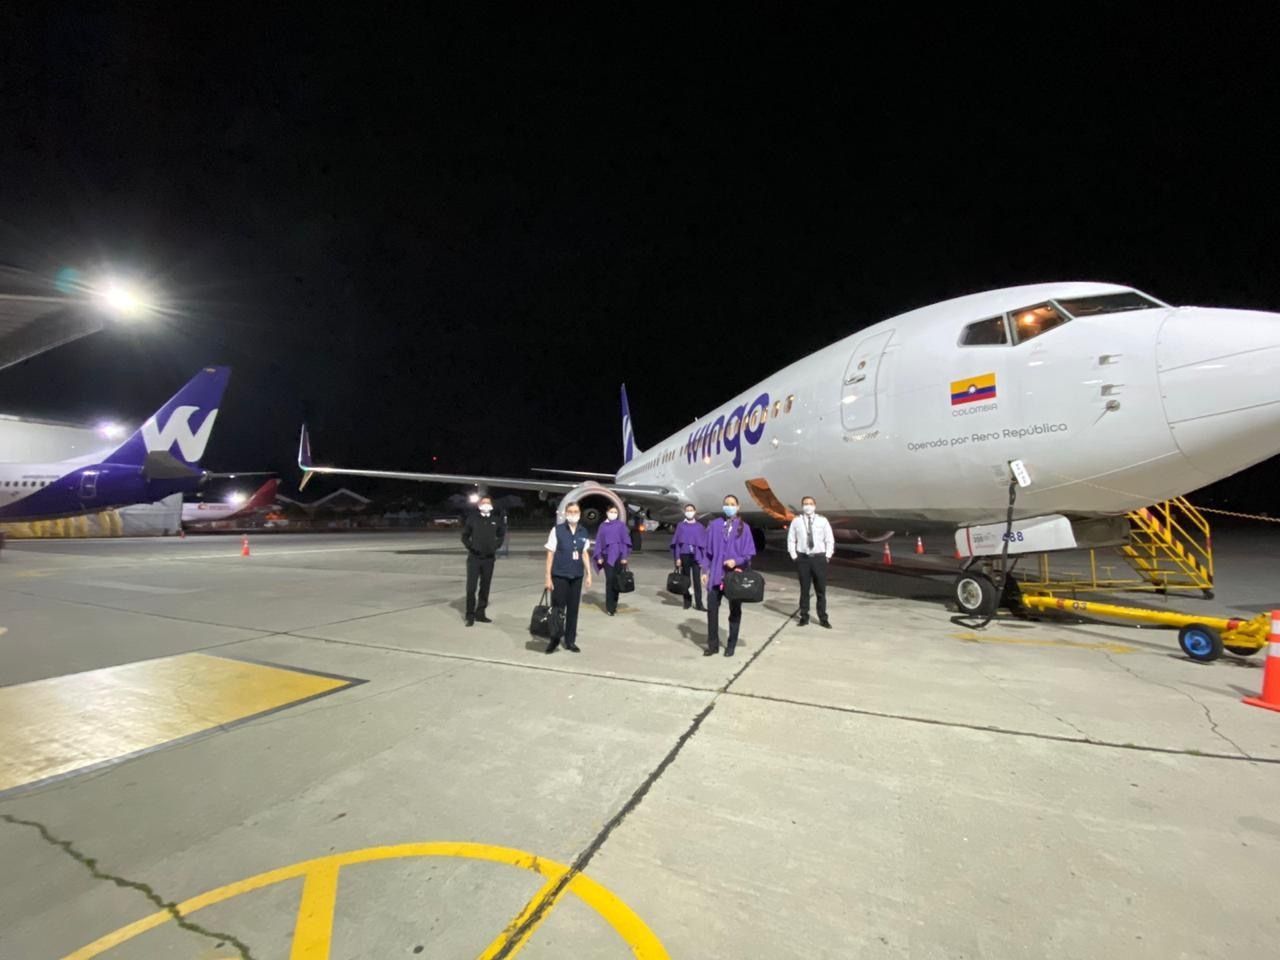 La aerolínea Wingo inició operaciones en su nueva ruta San José-Panamá